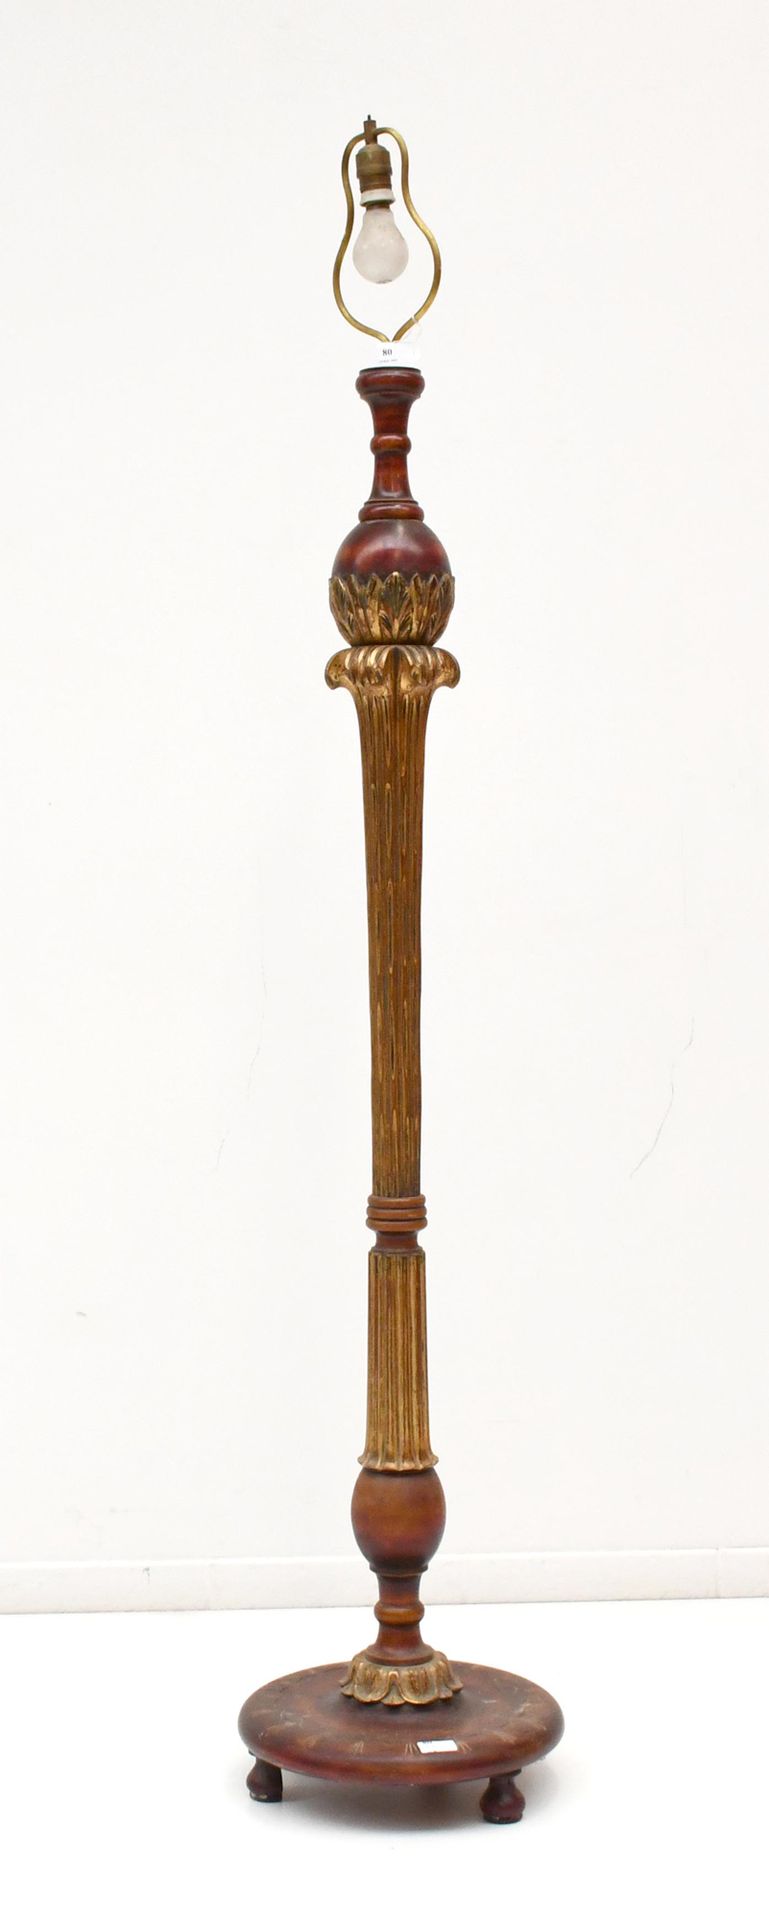 Null Albert Chambon
Lampadaire vintage en bois sculpté et doré.